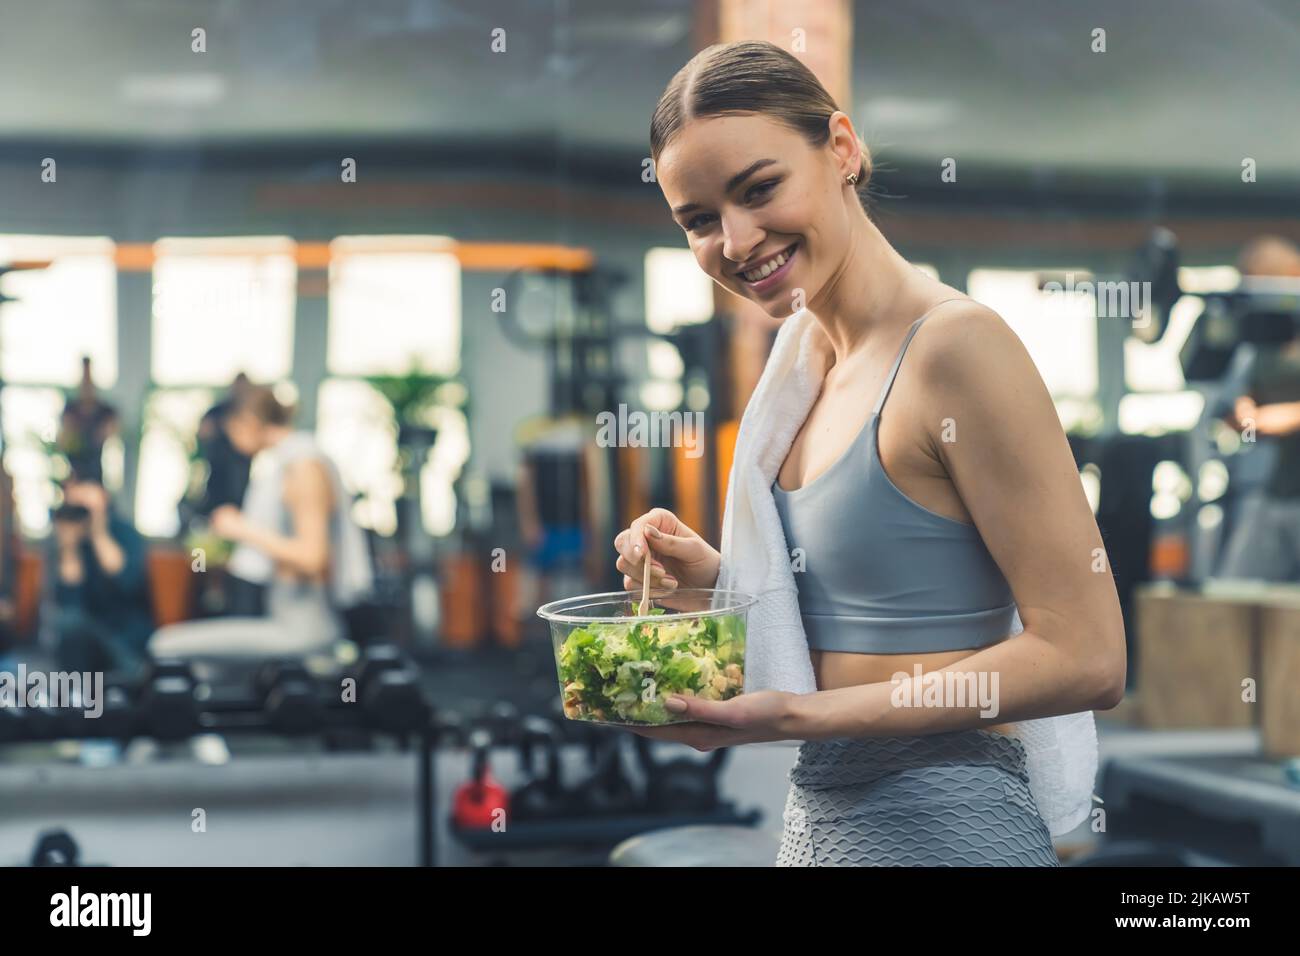 Junges glückliches Mädchen, das gesunde Nahrung isst und sich nach dem Training ausruht. Hochwertige Fotos Stockfoto